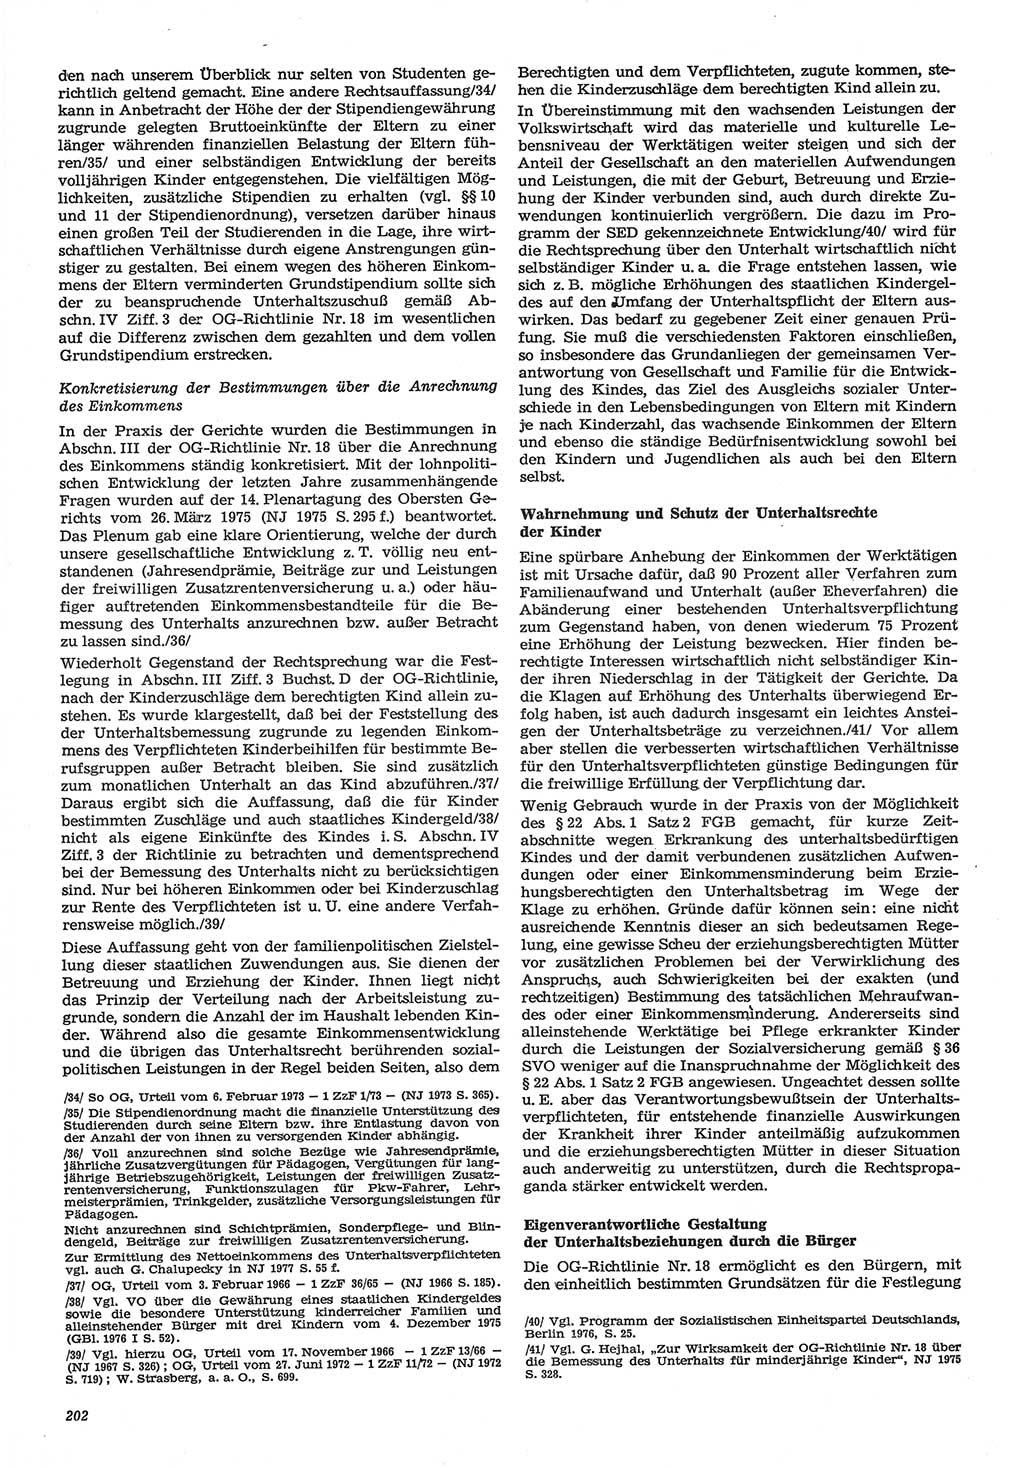 Neue Justiz (NJ), Zeitschrift für Recht und Rechtswissenschaft-Zeitschrift, sozialistisches Recht und Gesetzlichkeit, 31. Jahrgang 1977, Seite 202 (NJ DDR 1977, S. 202)